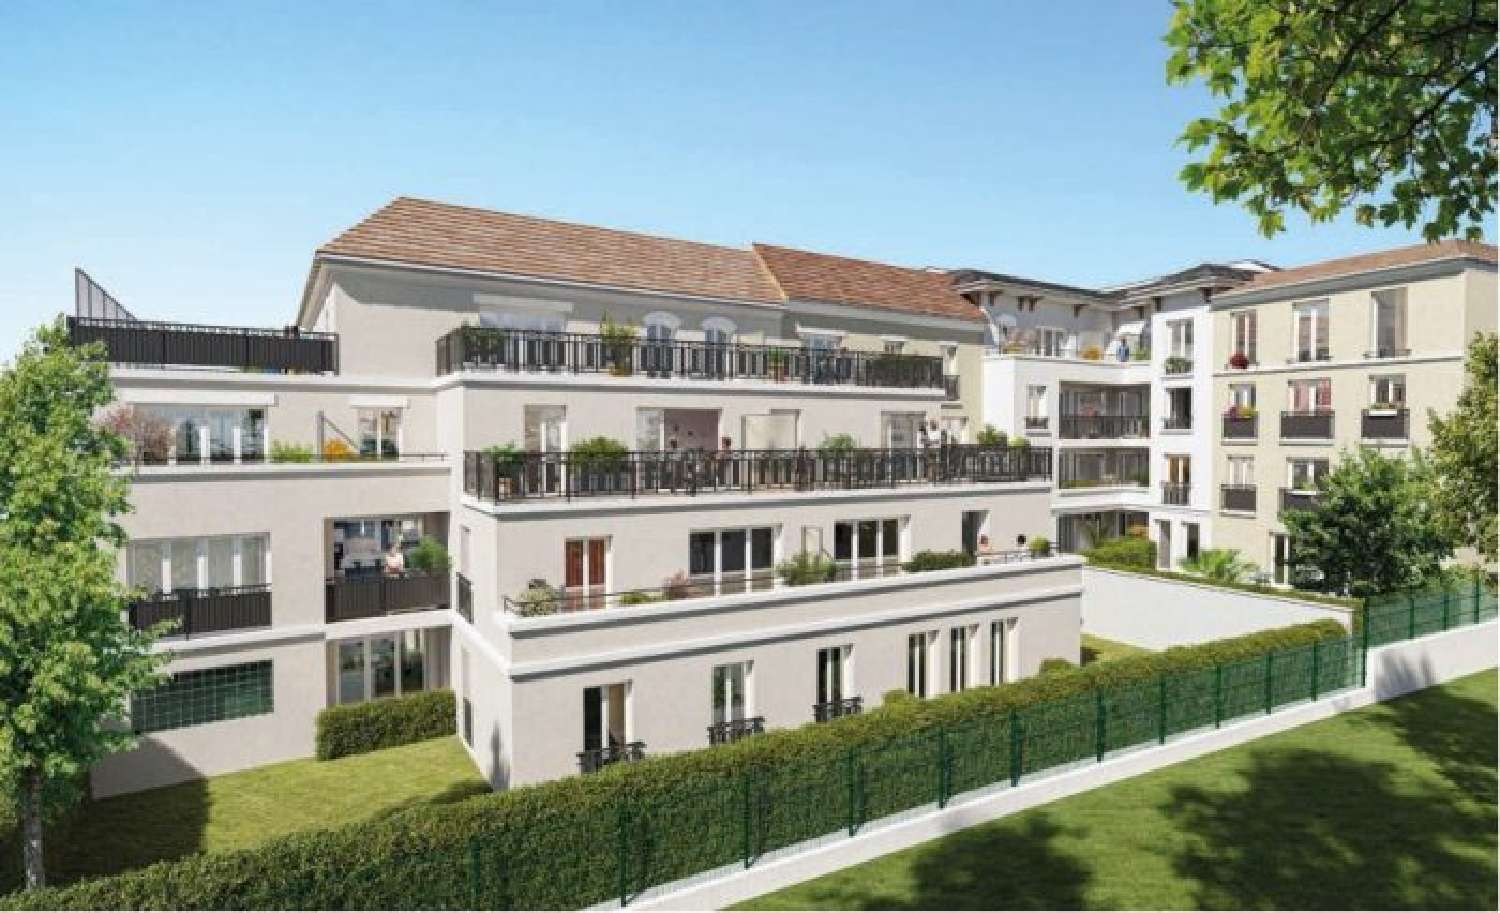  à vendre appartement Les Bruyères Val-de-Marne 1